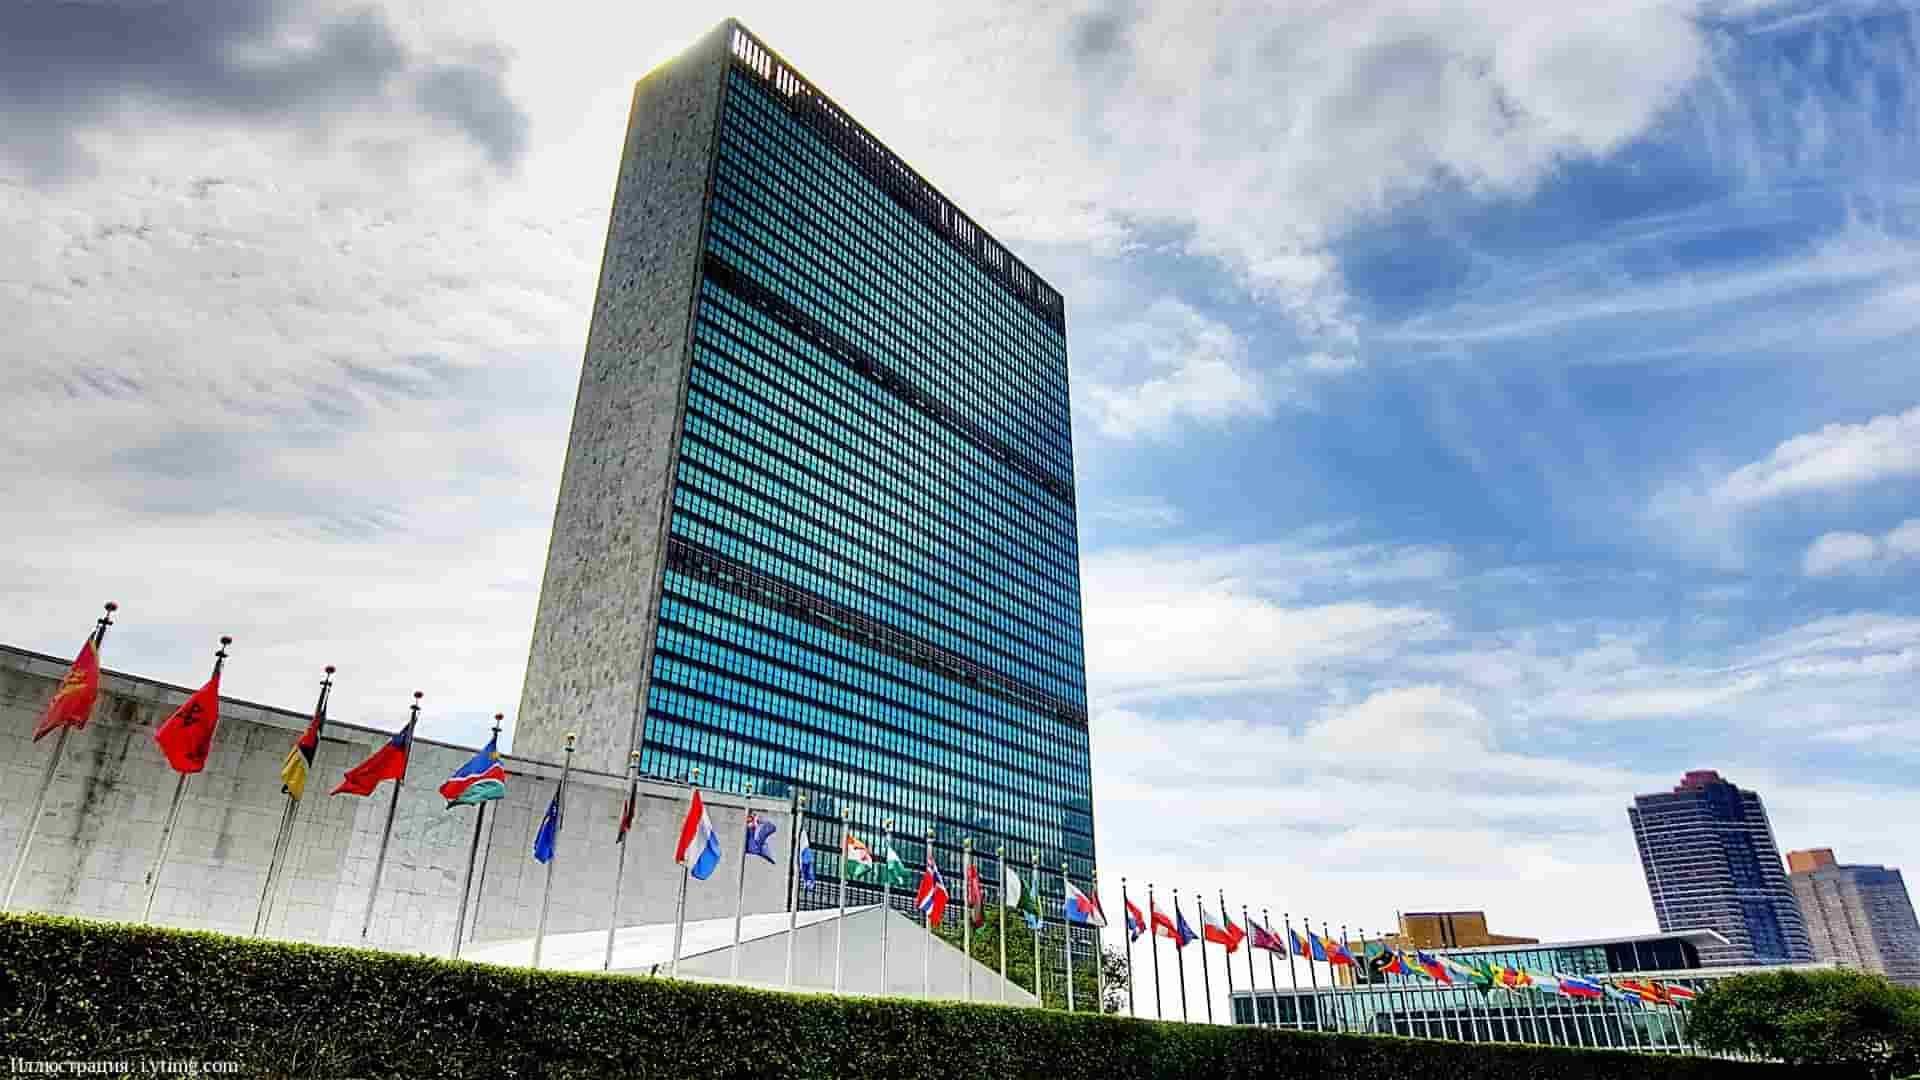 День государственной службы ООН